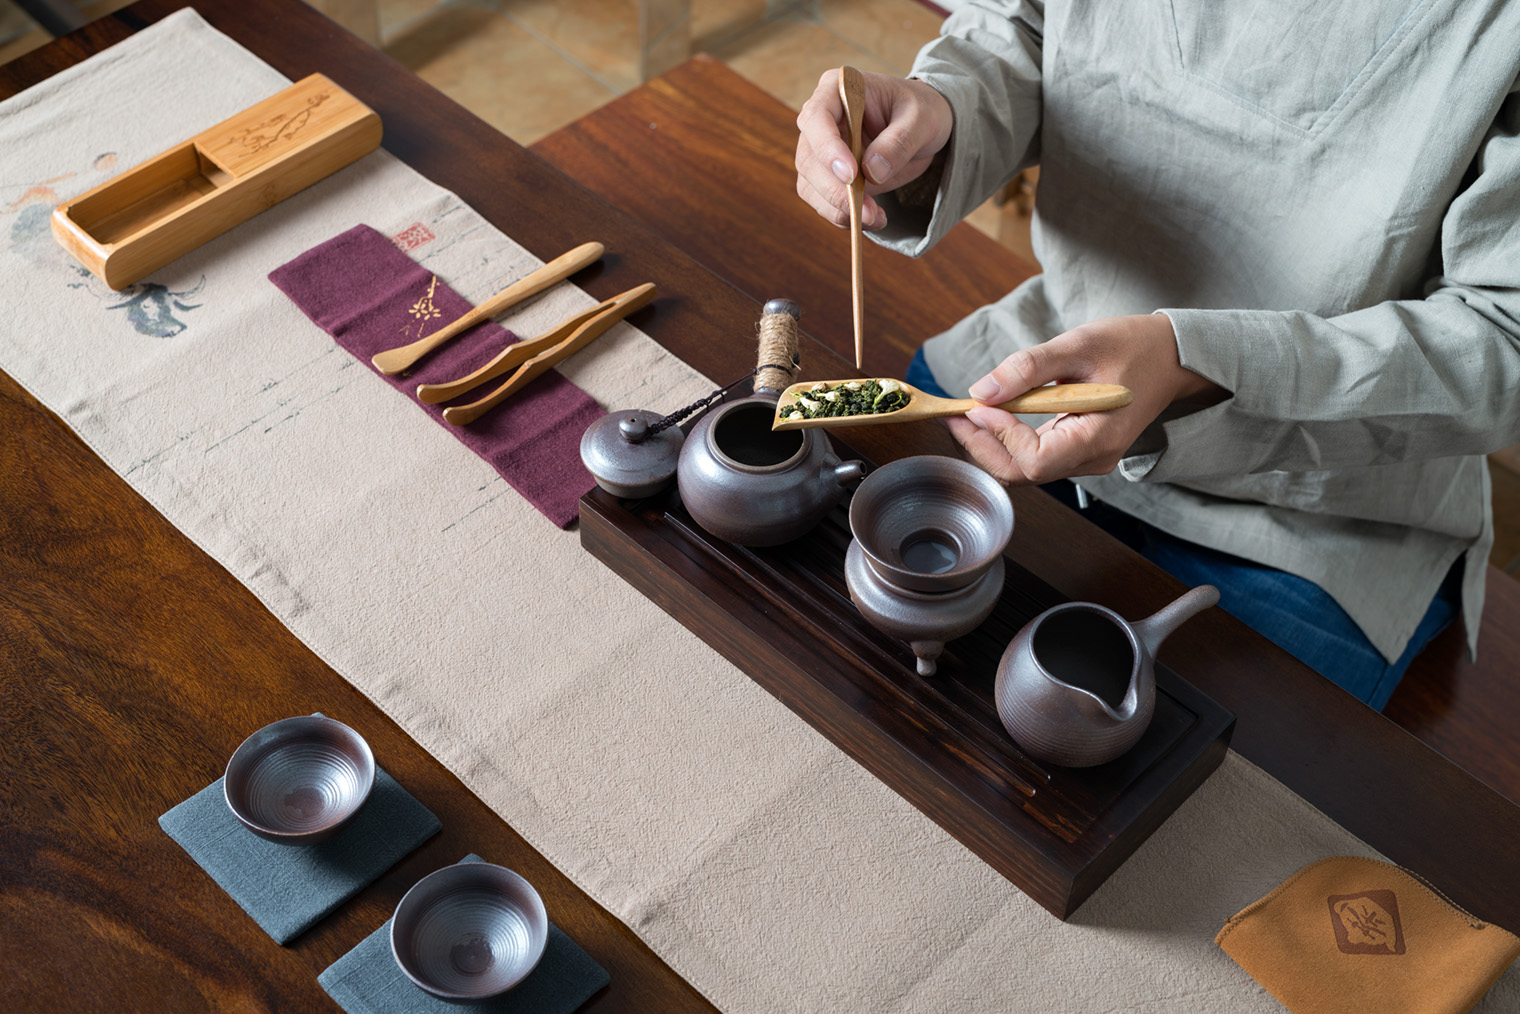 Сервировка стола для чайной церемонии. Фотография: fuyu liu / Shutterstock / FOTODOM